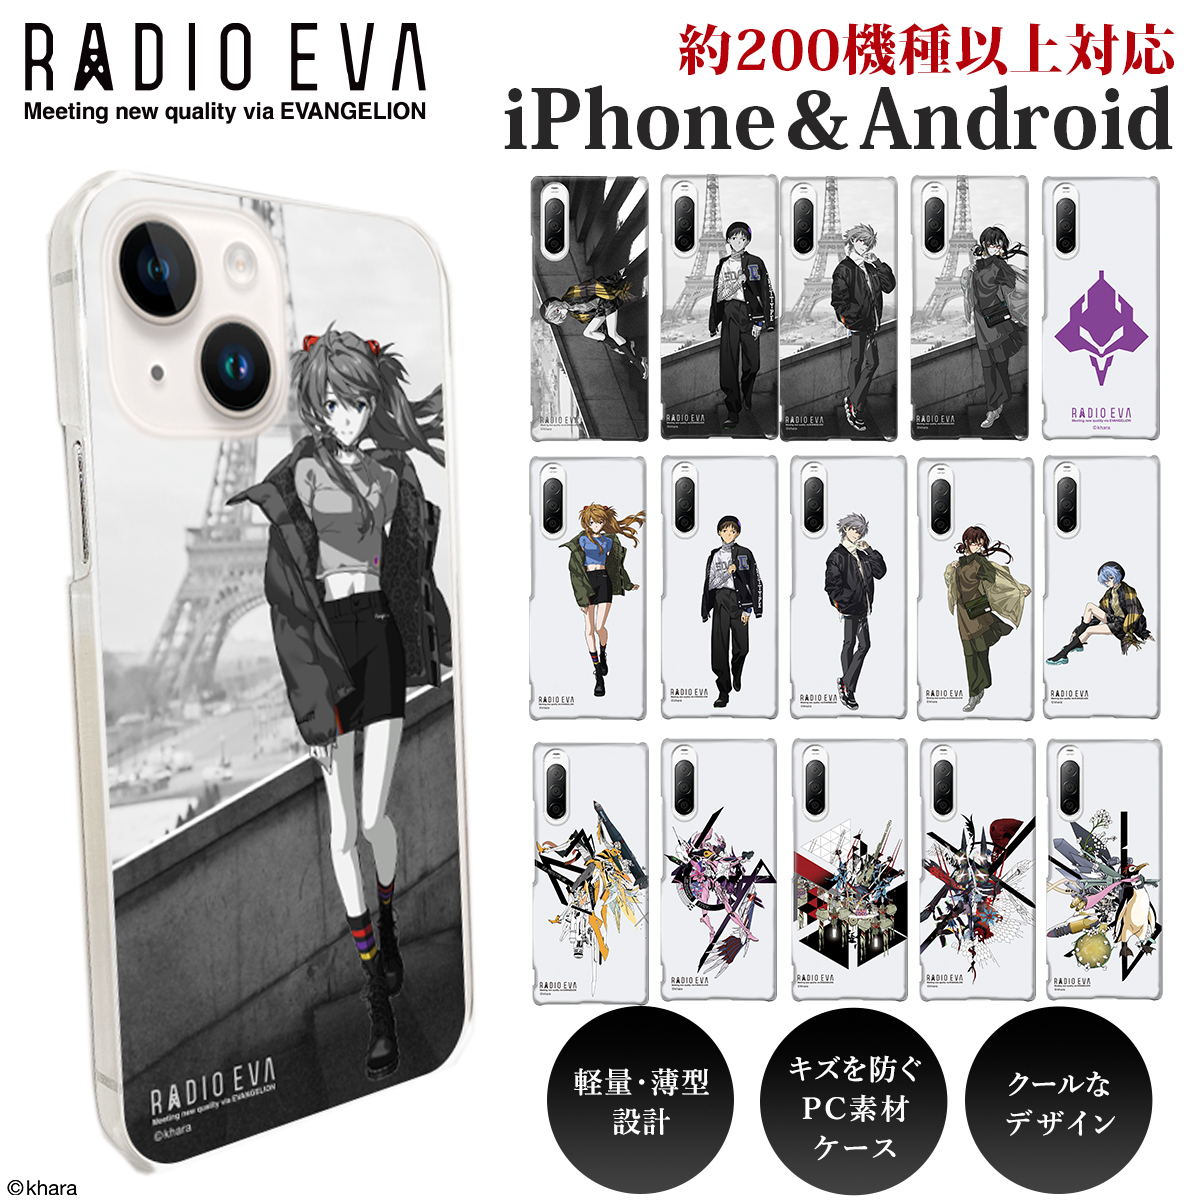 全200機種対応 iPhone対応 Android対応 RADIO EVA ラヂオエヴァ スマホケース クリアケース PCケース ハードケース EVANGELION  エヴァンゲリオン新劇場版